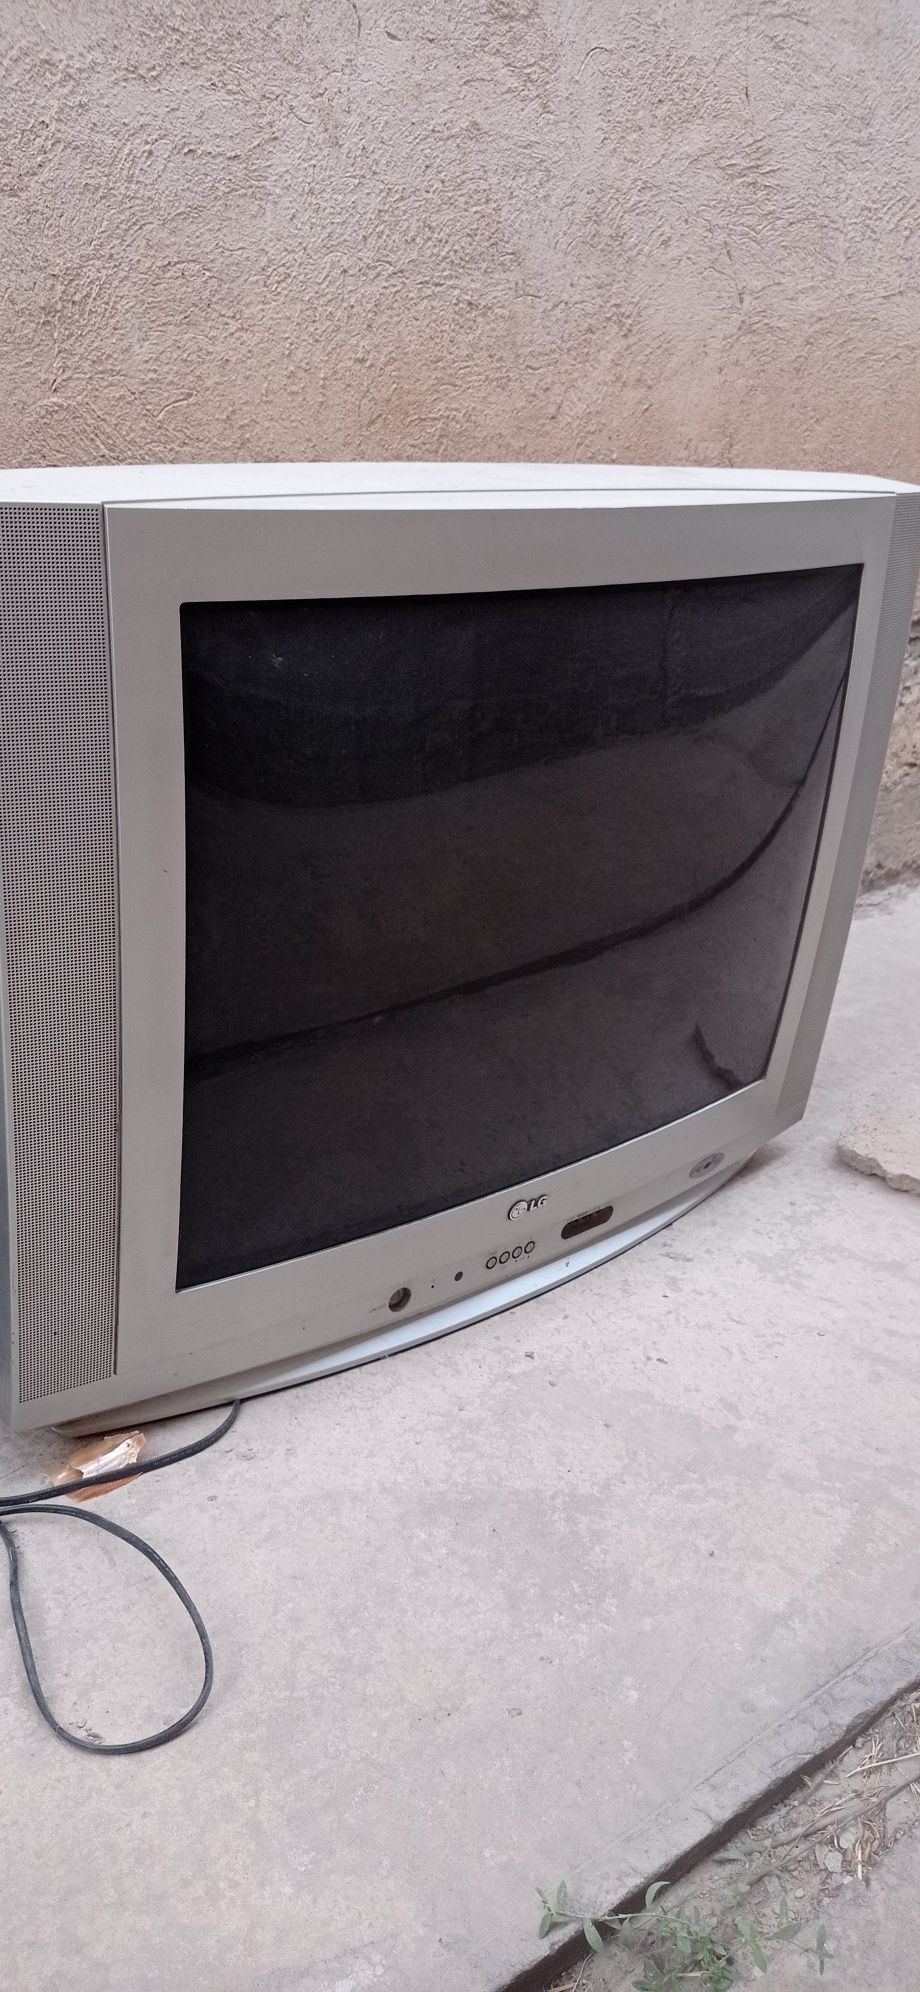 Телевизор LG. Серый